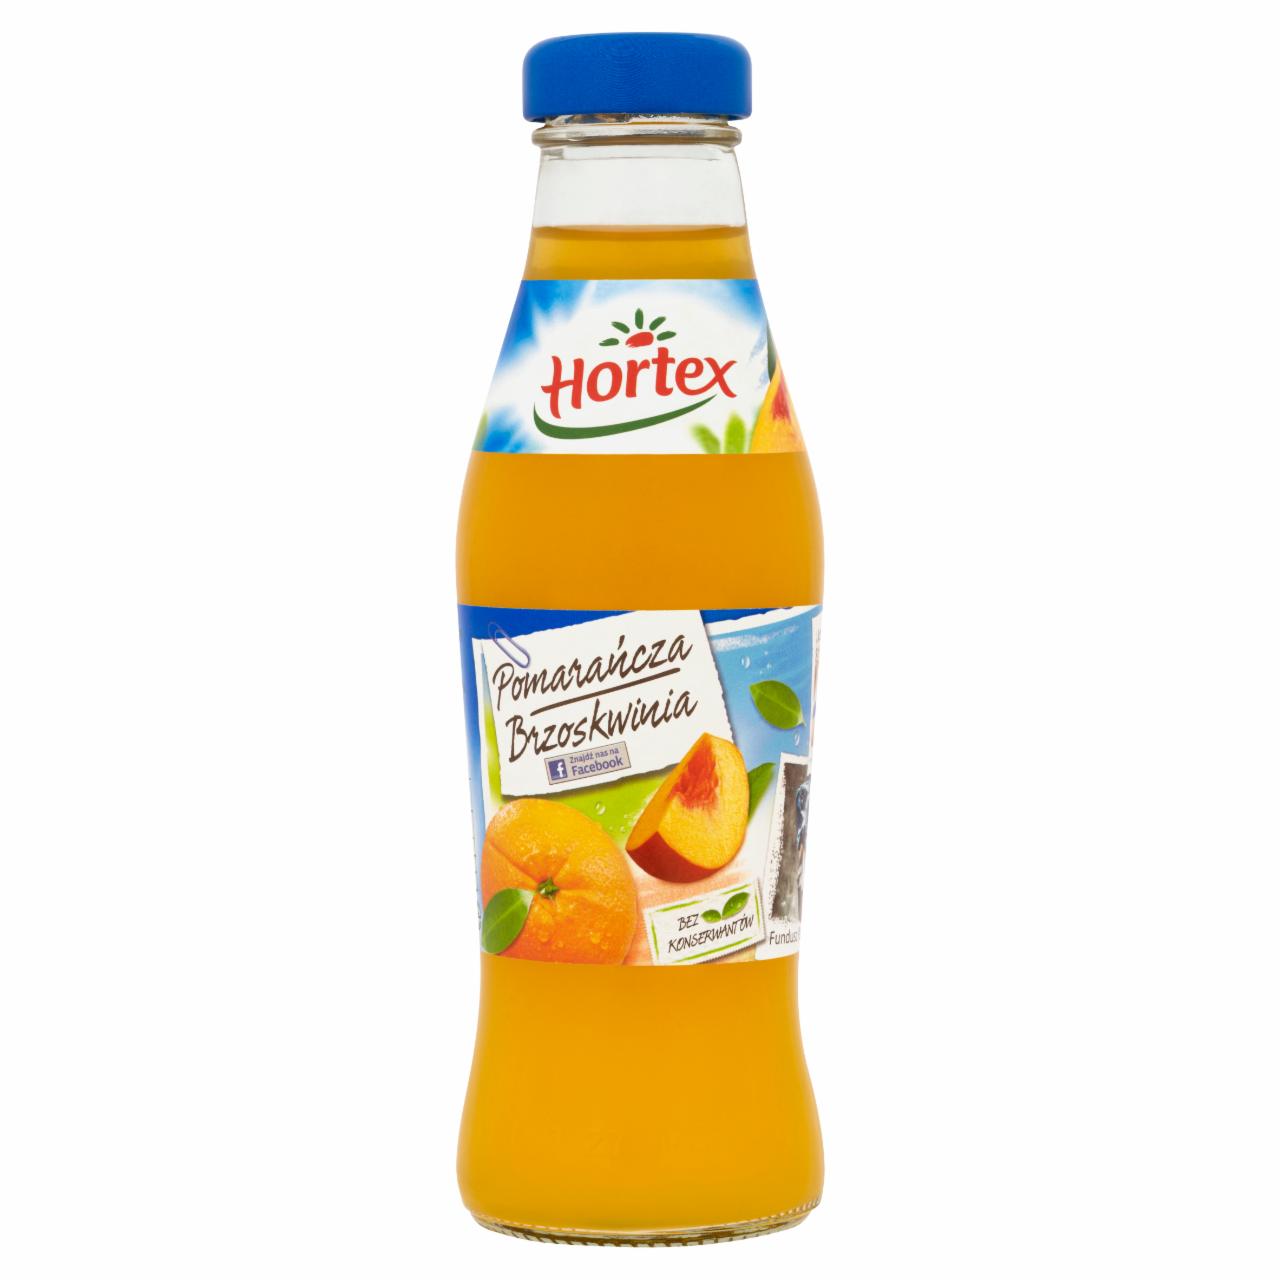 Zdjęcia - Hortex Pomarańcza Brzoskwinia Napój 250 ml